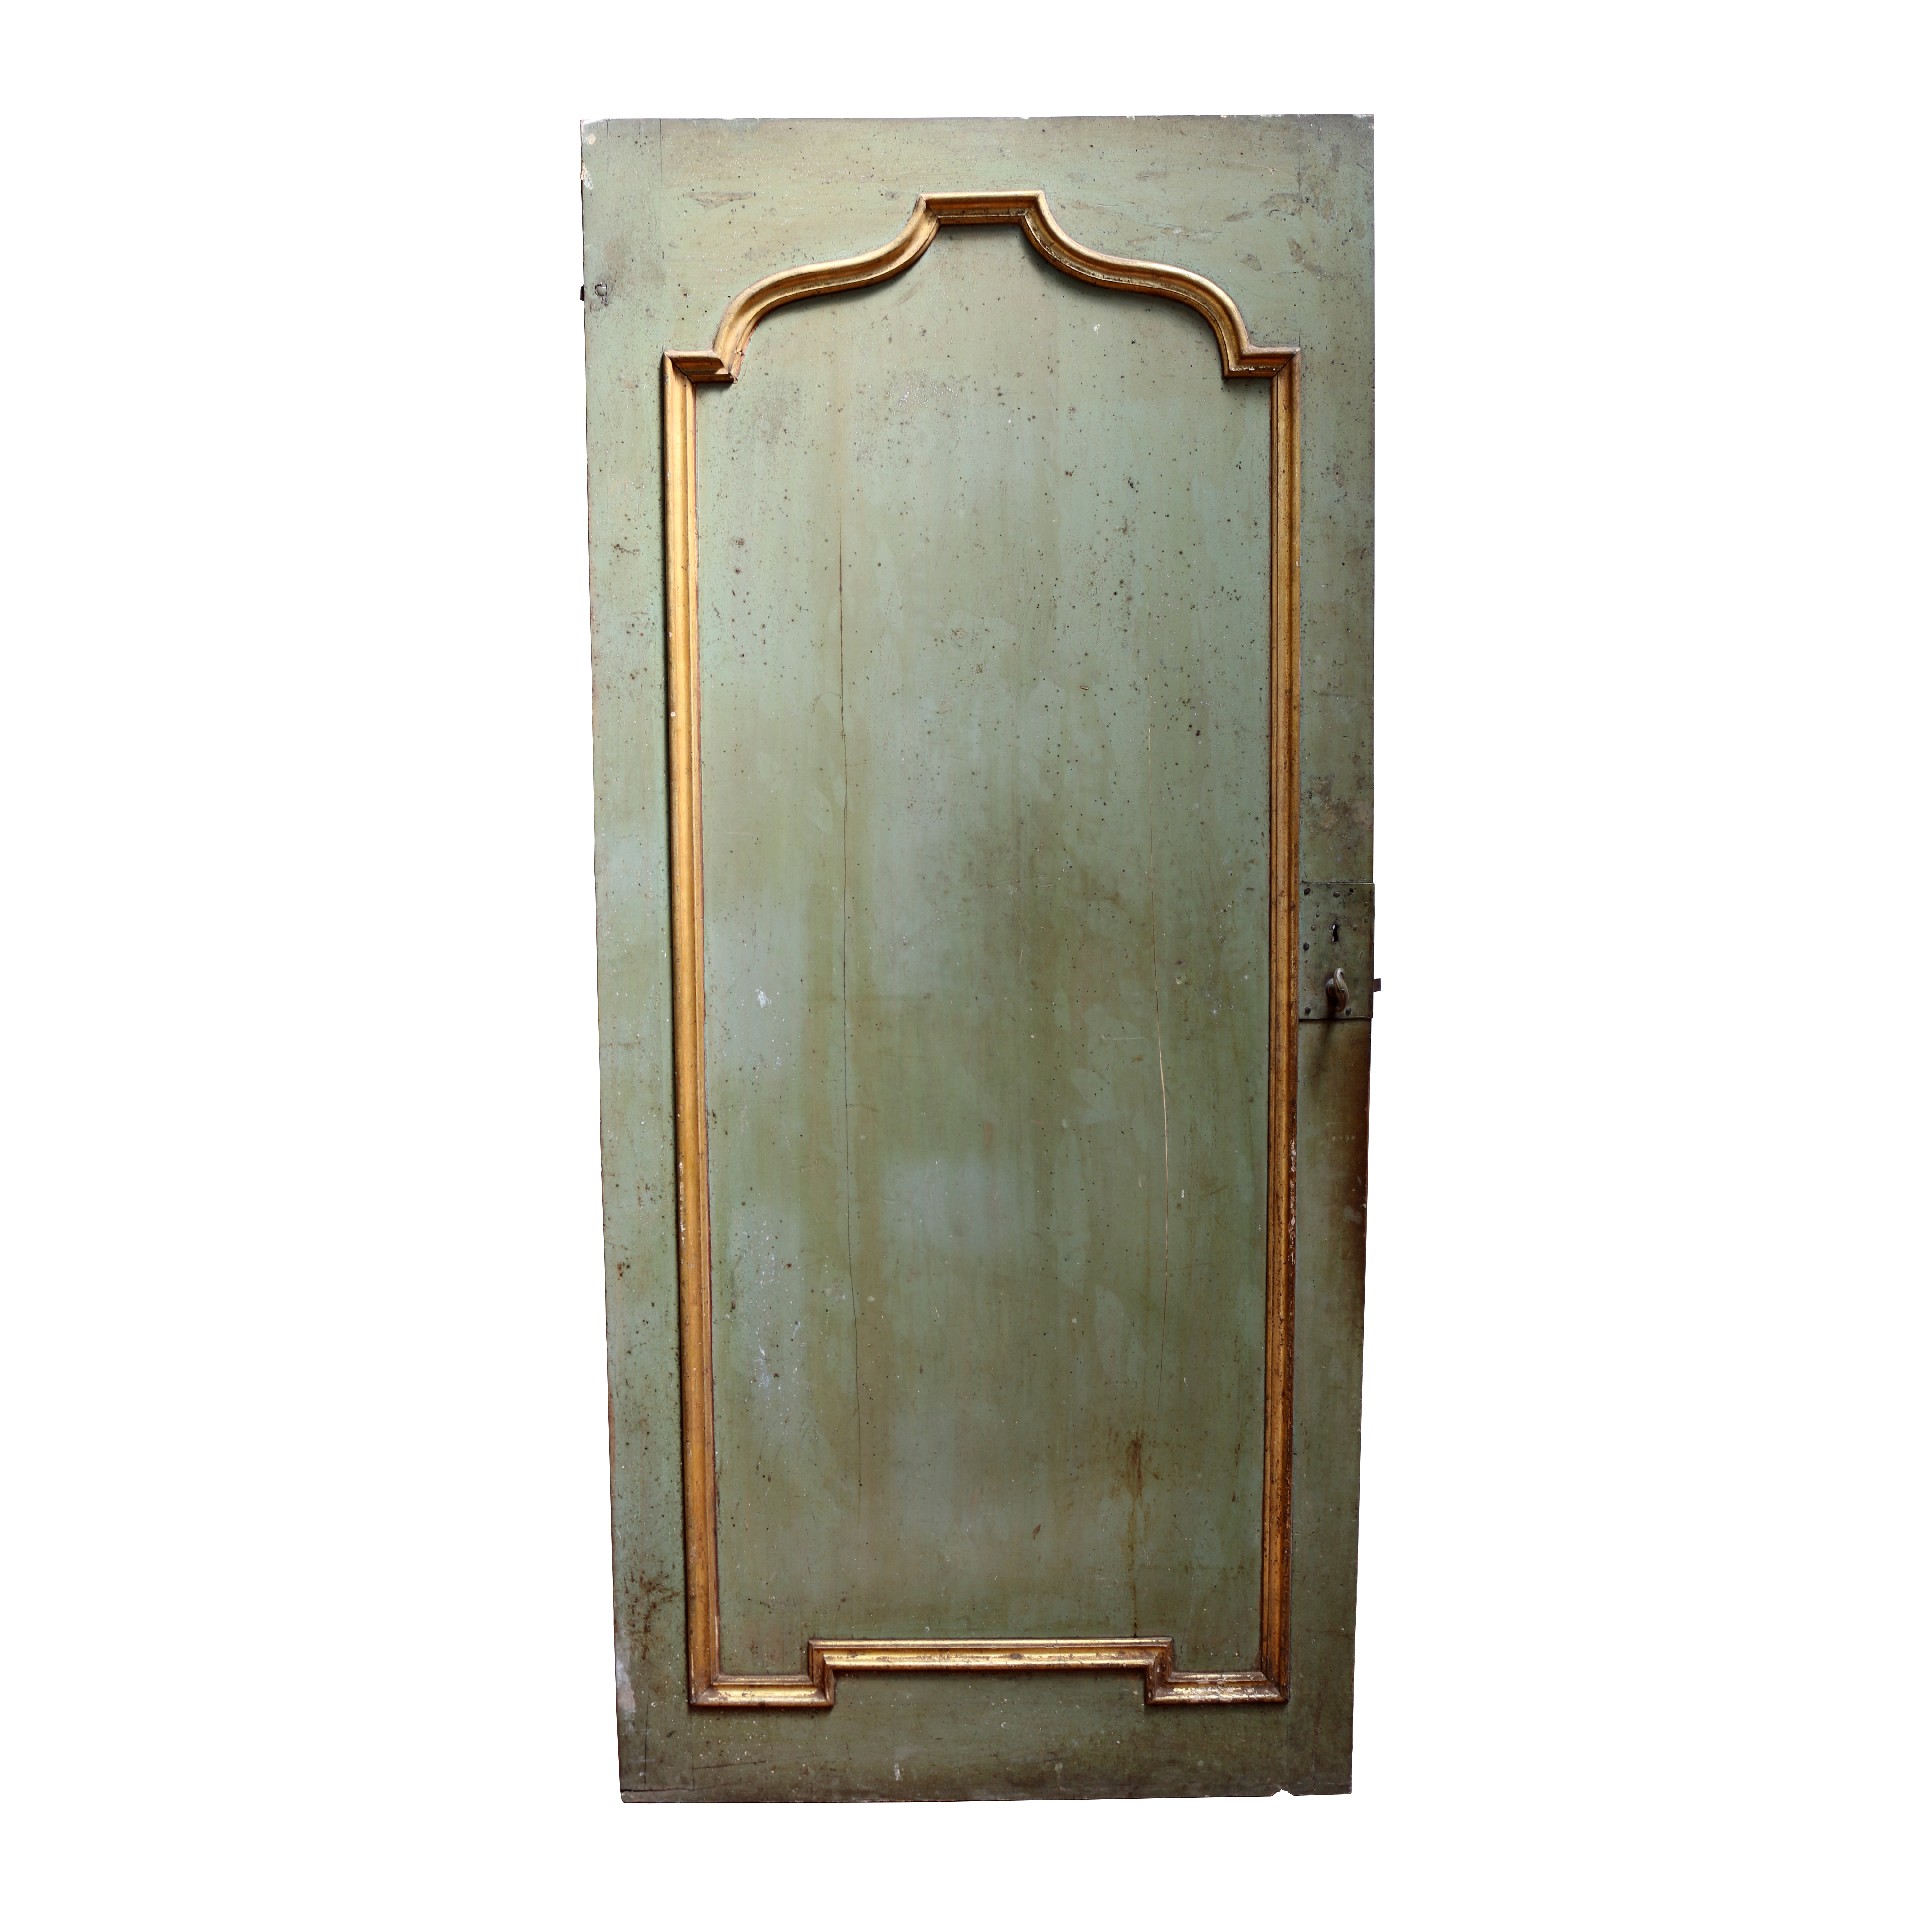 Antica porta in legno dipinta. - Porte Rare - Porte Antiche - Prodotti - Antichità Fiorillo